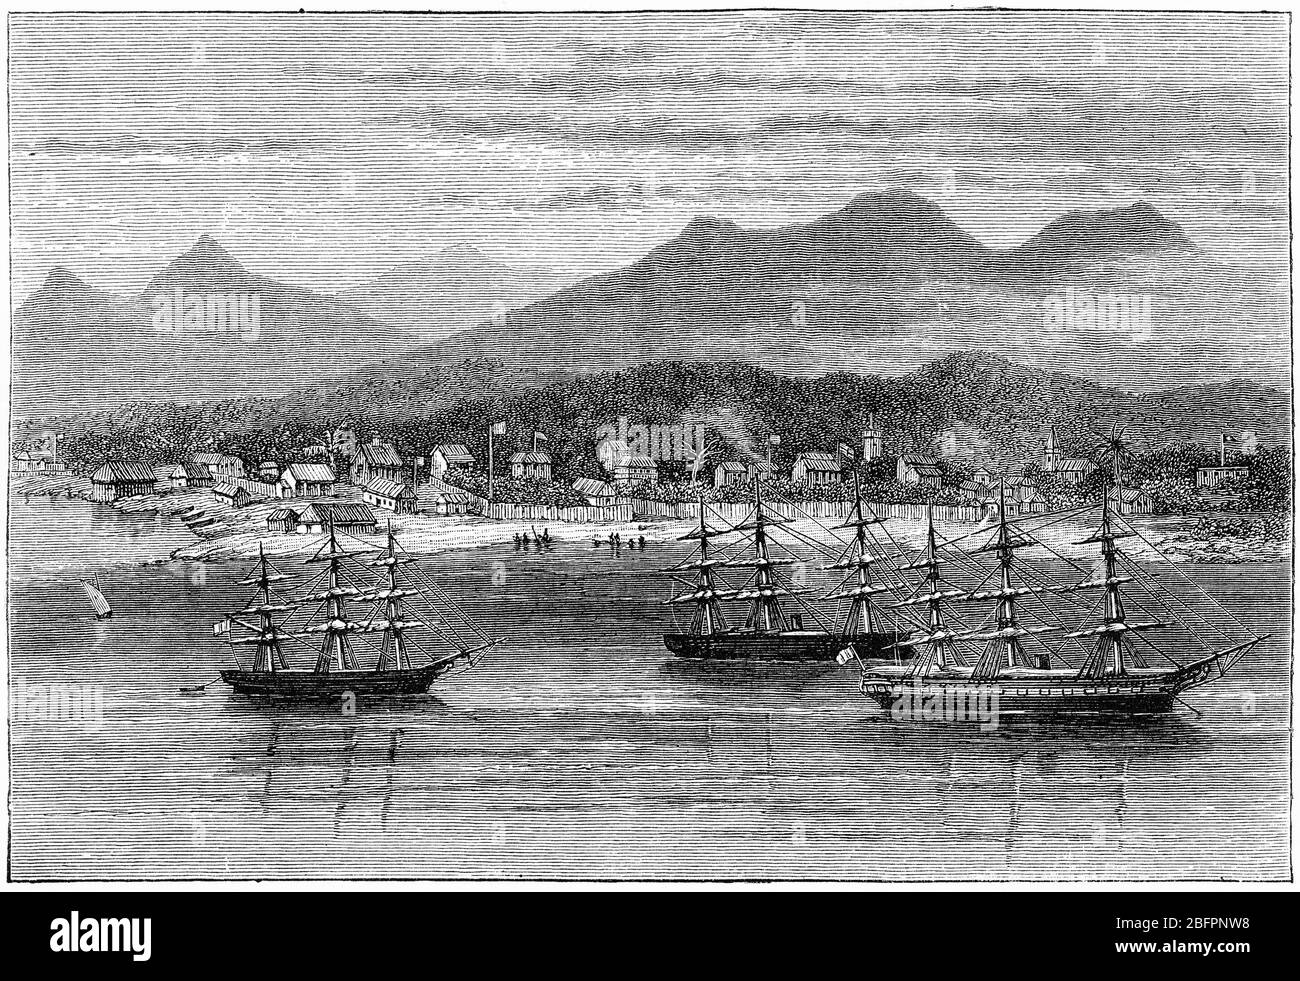 Gravur des Hafens von Toamasina oder Tamatave, Hauptstadt der Atsinanana Region an der Ostküste Madagaskars am Indischen Ozean. Stockfoto